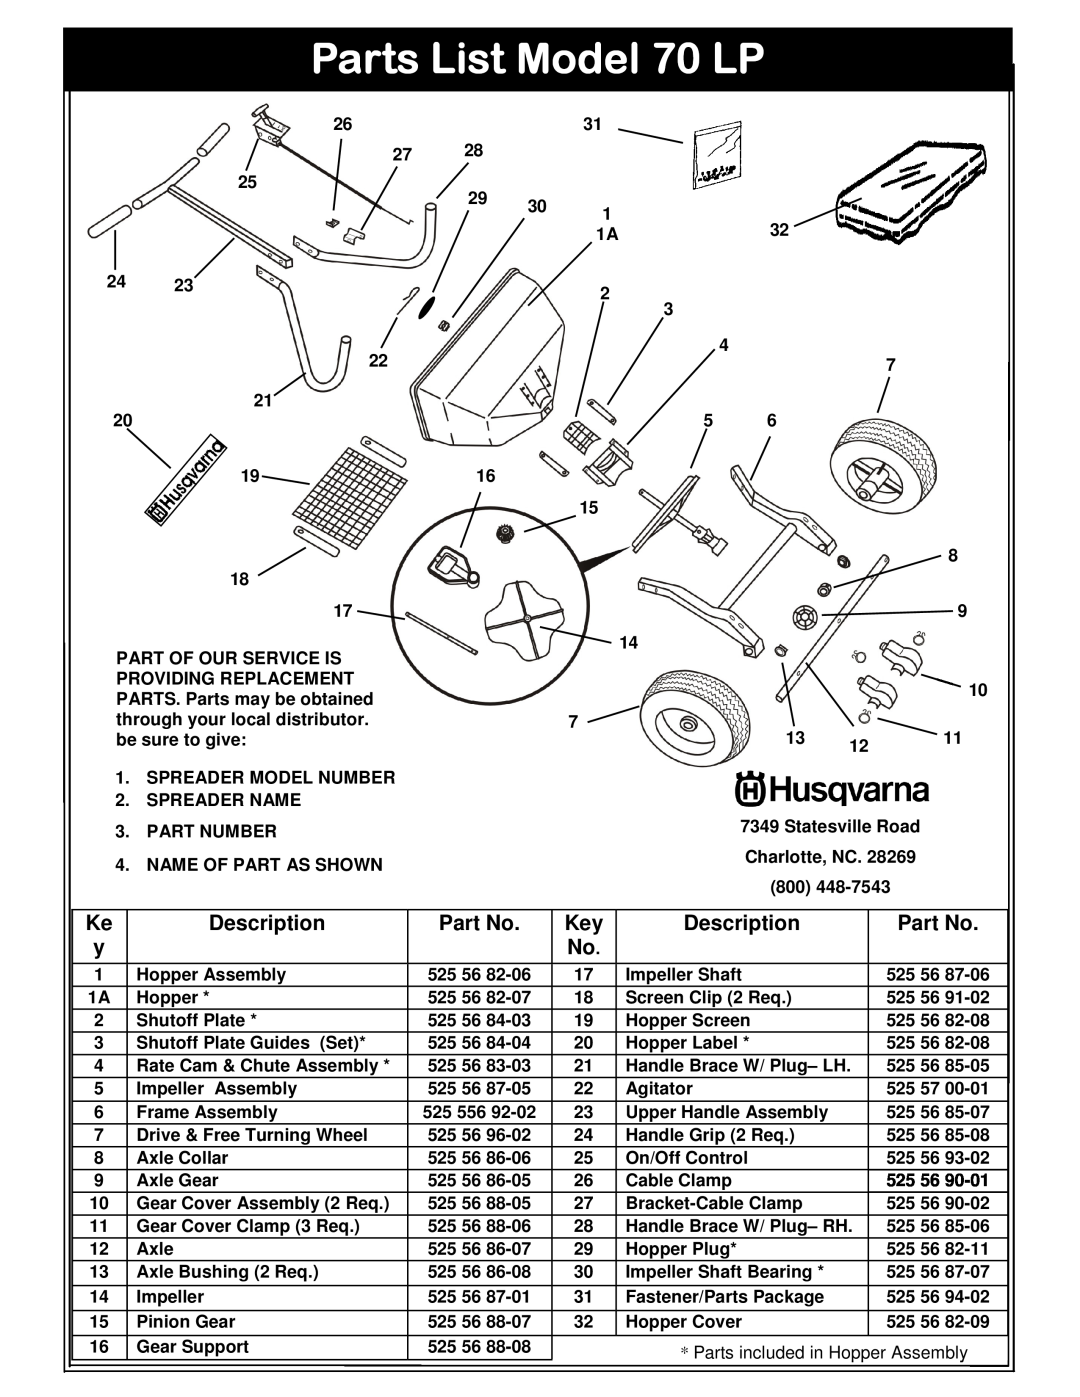 Husqvarna 966043502 owner manual Parts List Model 70 LP, Description 